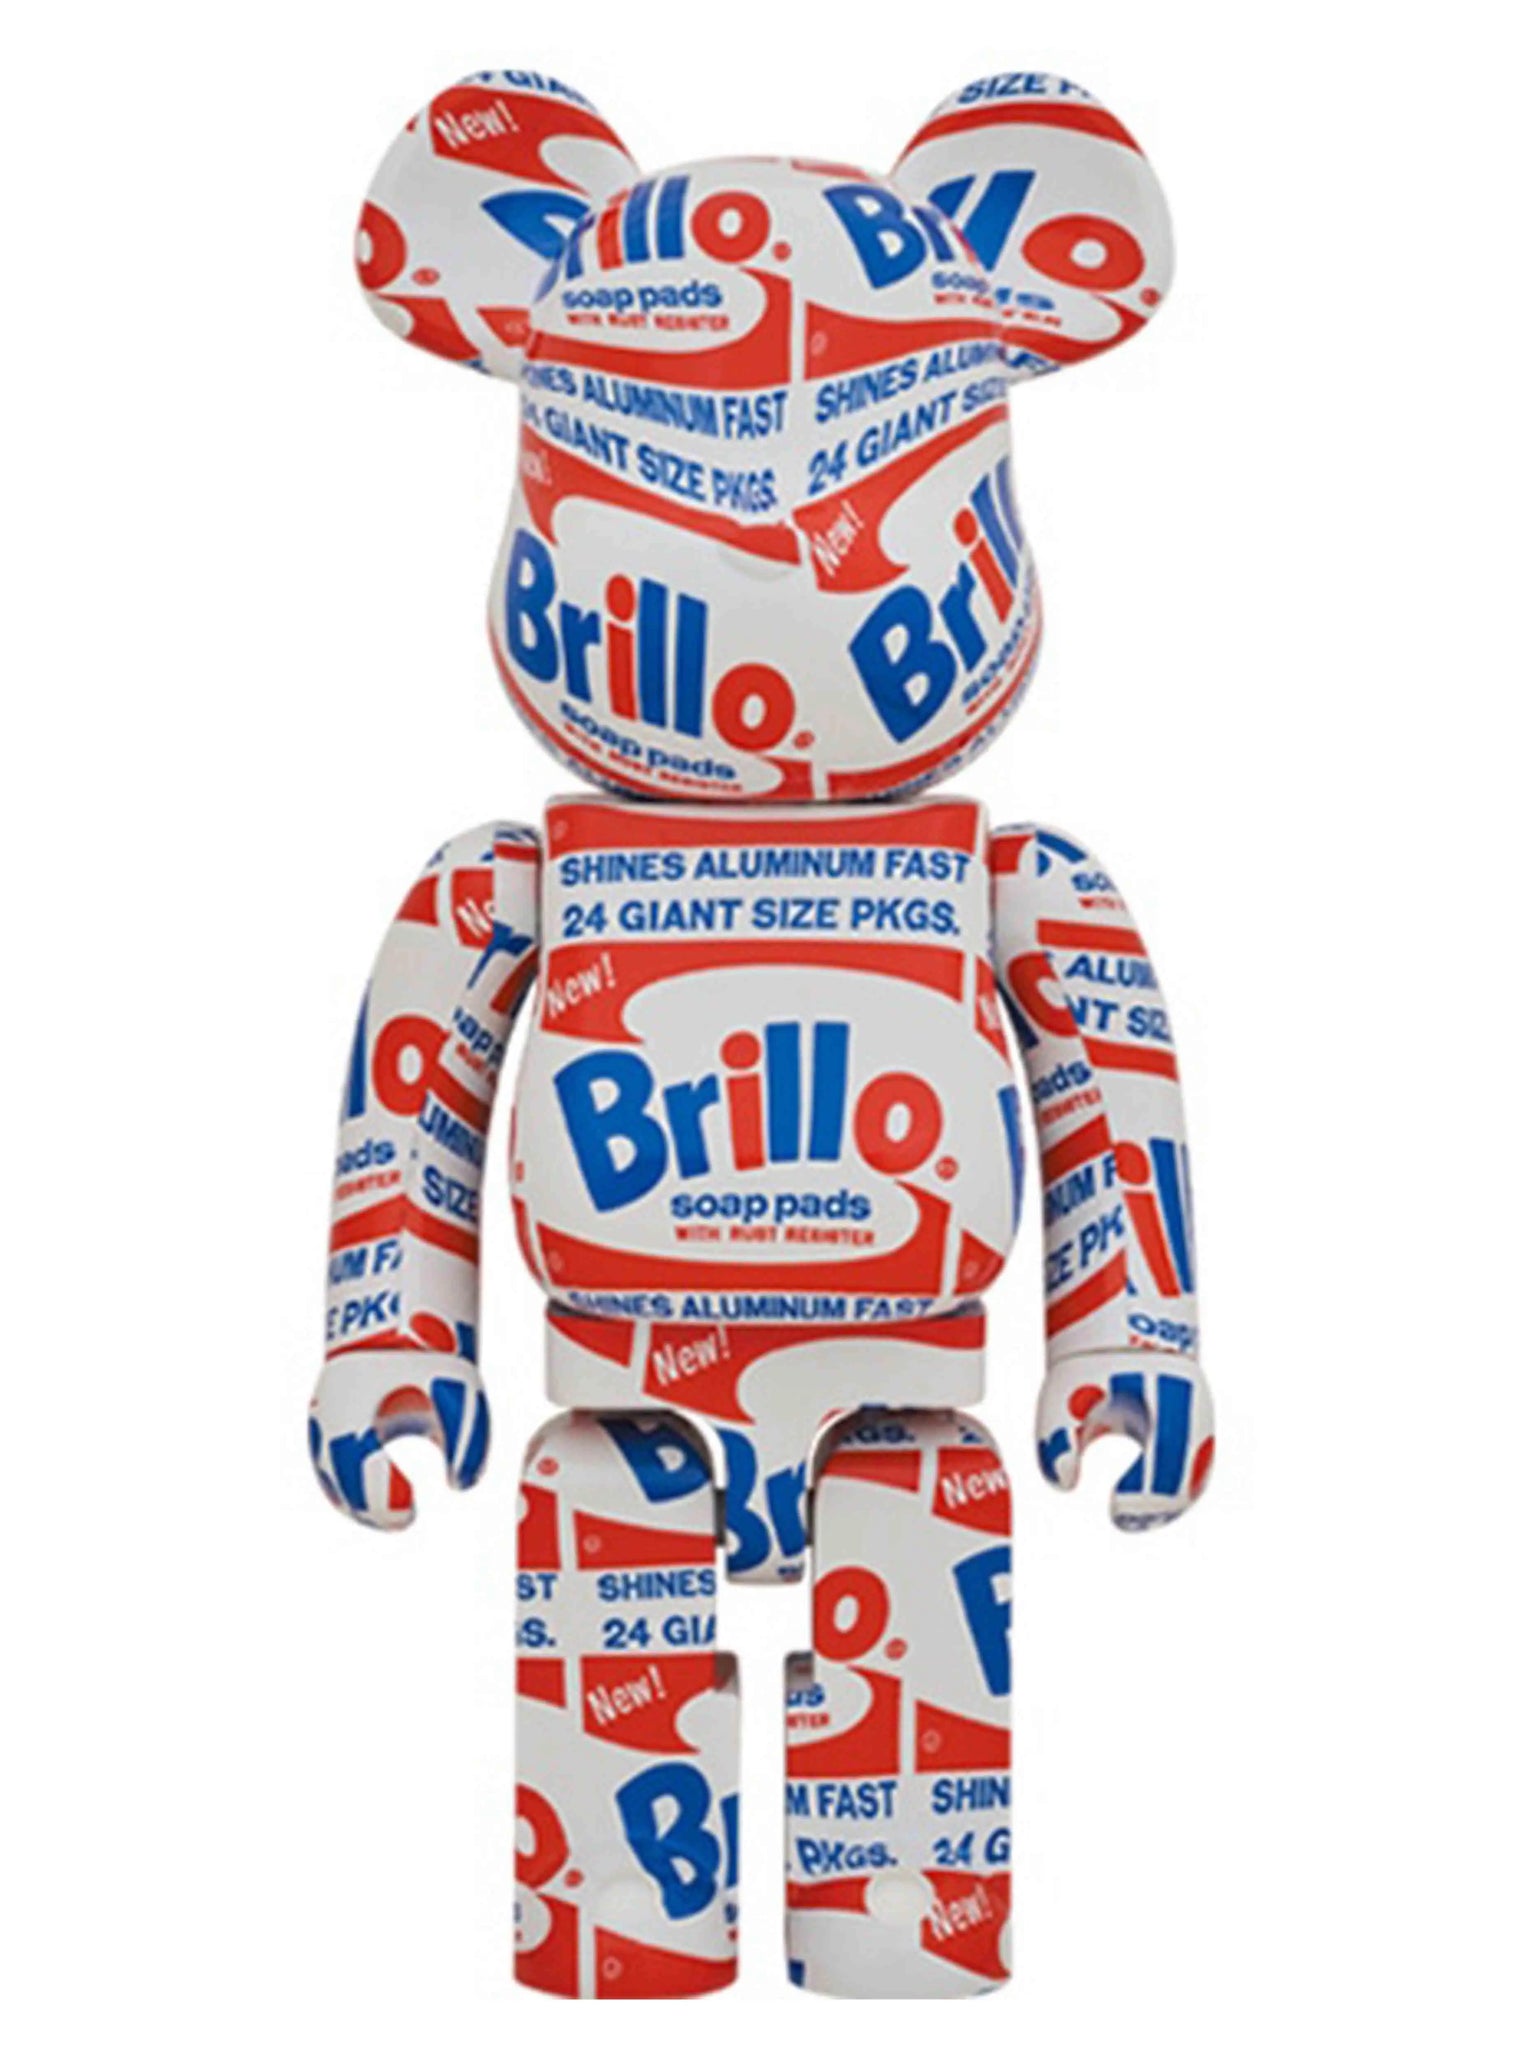 Medicom Toy Be@rbrick Andy Warhol Brillo 1000% Prior